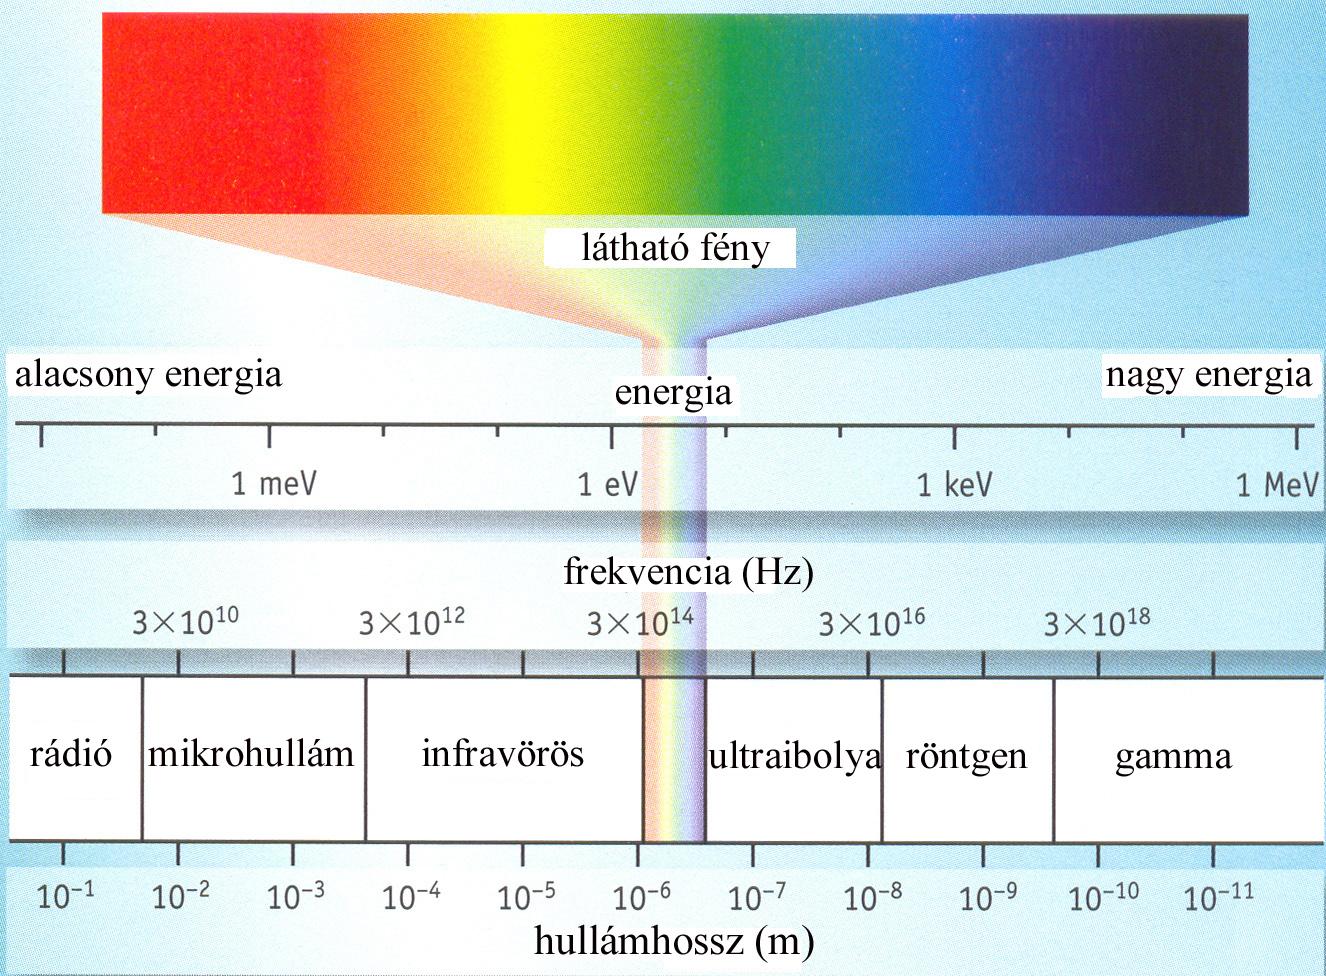 Elektromágneses spektrum low energy energy visible light high